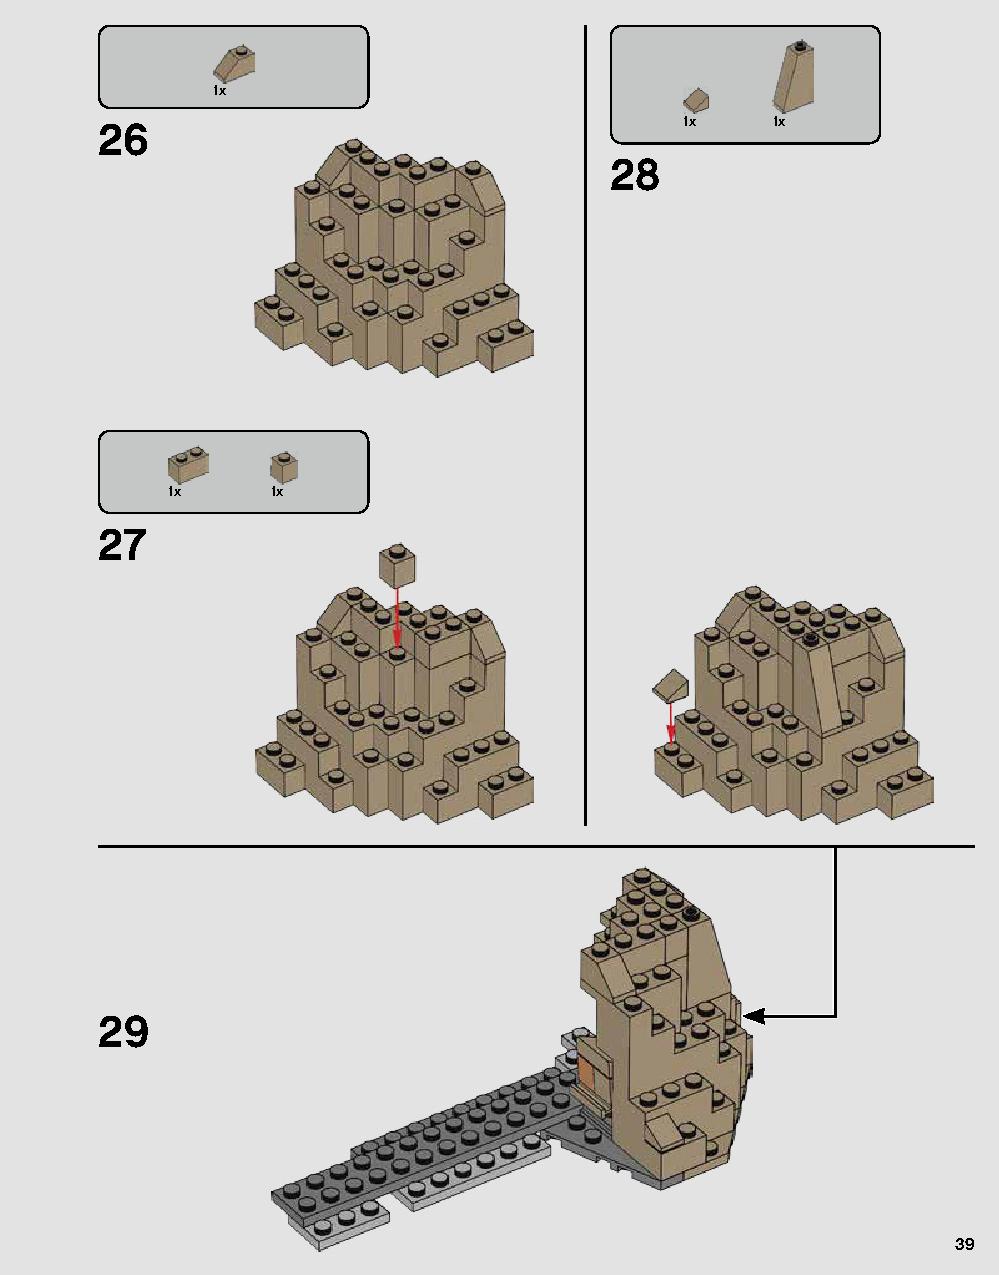 ダース・ベイダーの城 75251 レゴの商品情報 レゴの説明書・組立方法 39 page